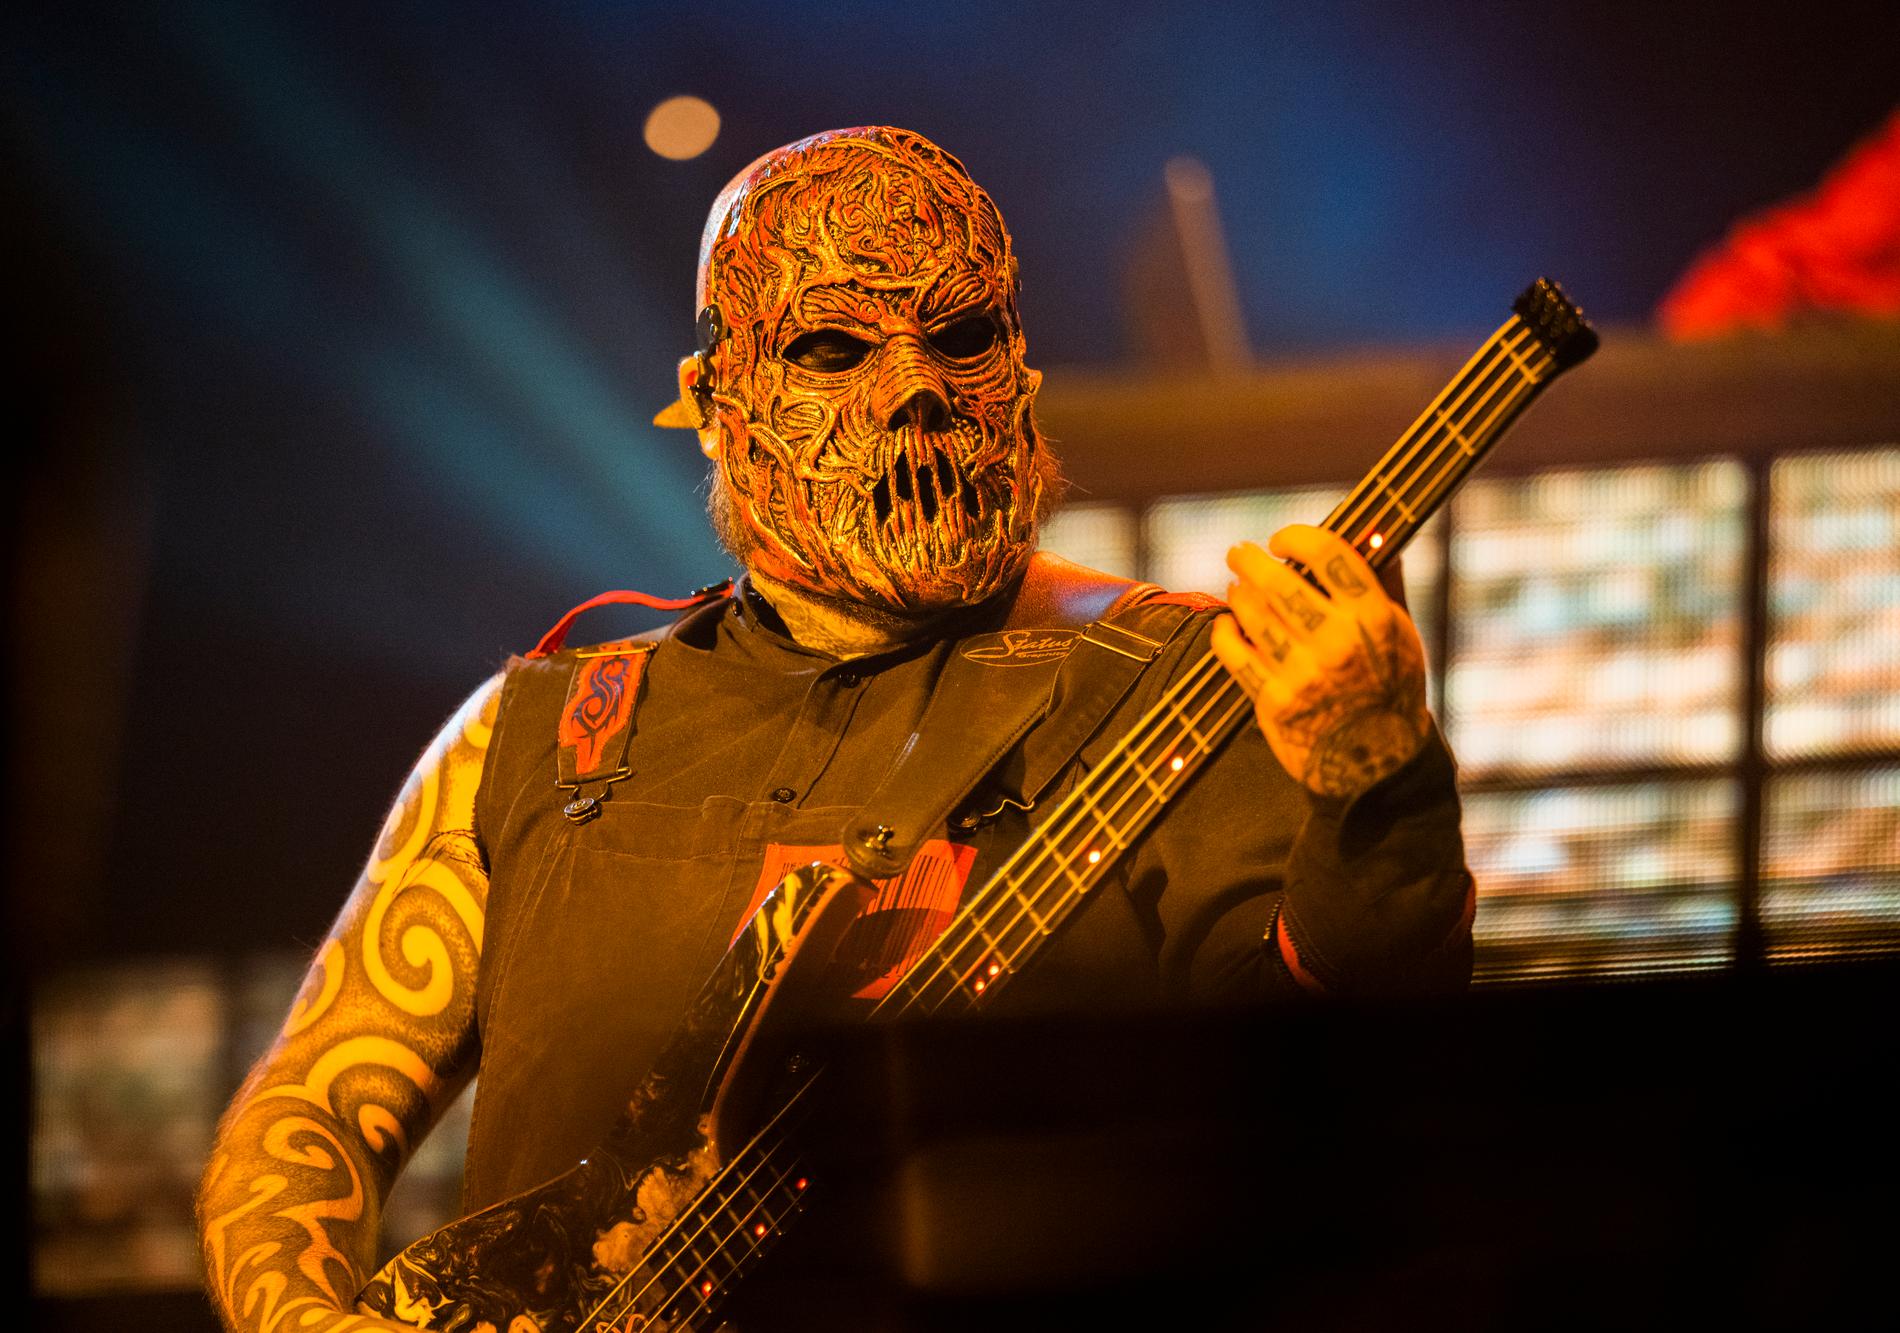 Slipknots senaste tillskott Alessandro Venturella höll, till skillnad från sina bandkamrater, en rätt låg och tillbakalutad profil under konserten.